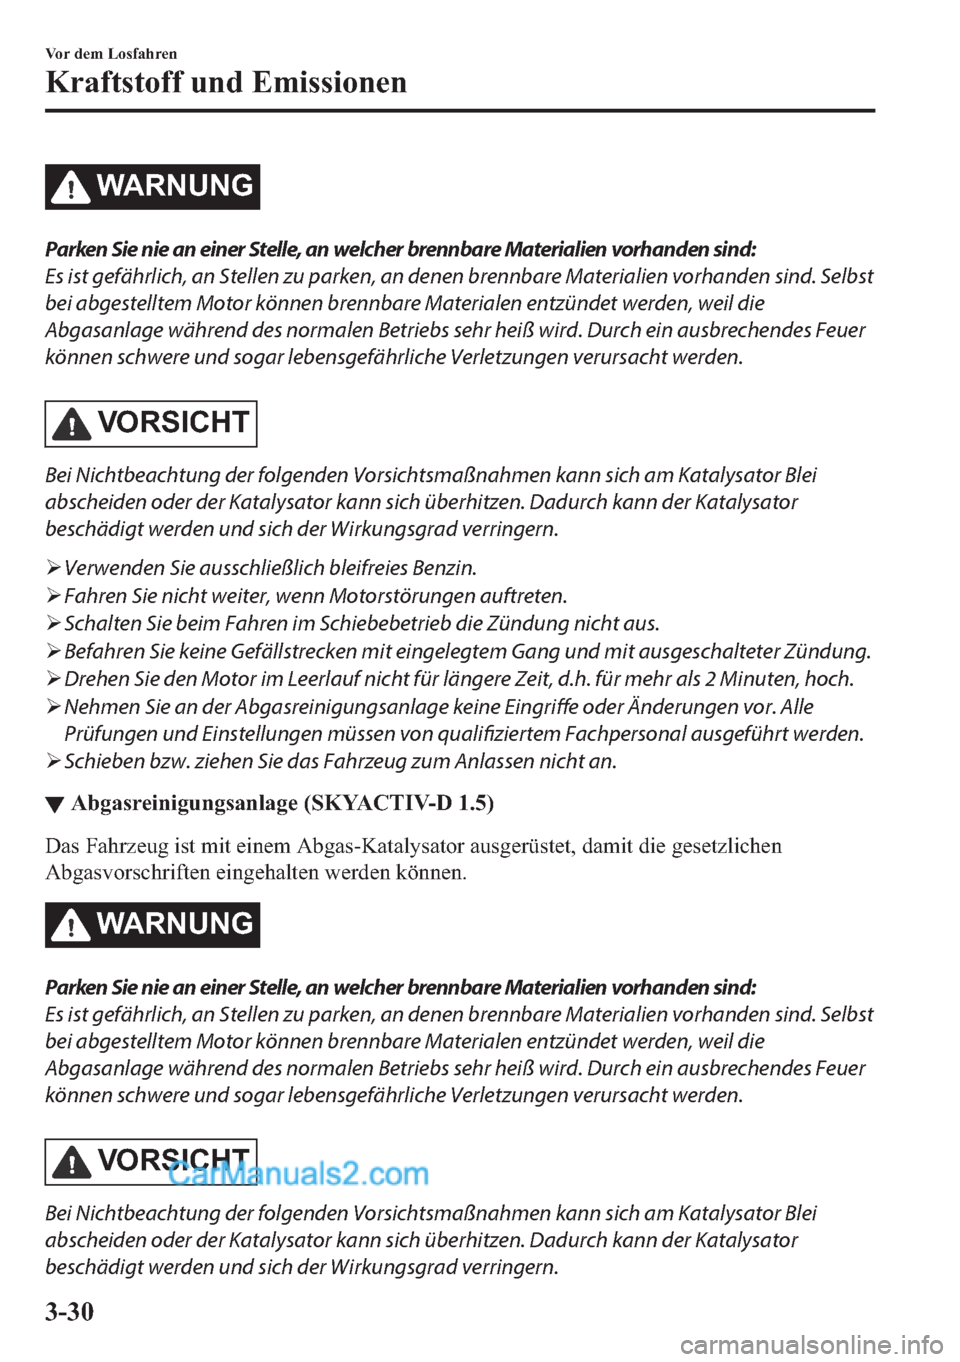 MAZDA MODEL 2 2018  Betriebsanleitung (in German) �:�$�5�1�8�1�*
Parken Sie nie an einer Stelle, an welcher brennbare Materialien vorhanden sind:
Es ist gefährlich, an Stellen zu parken, an denen brennbare Materialien vorhanden sind. Selbst
bei abge